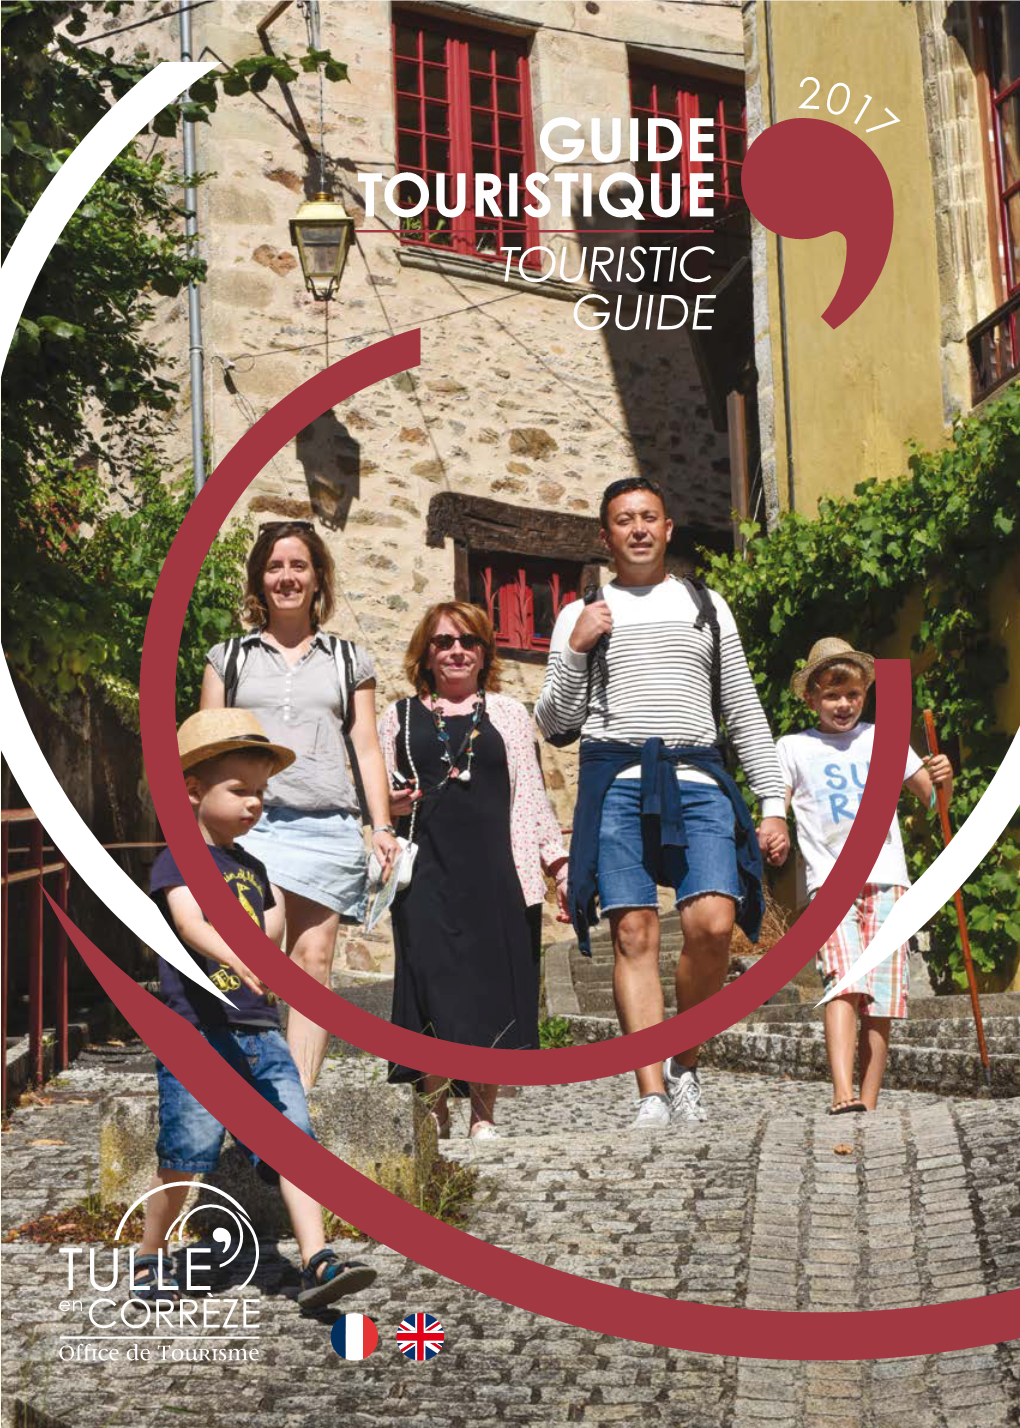 Guide Touristique 2017 Touristic Guide 2017